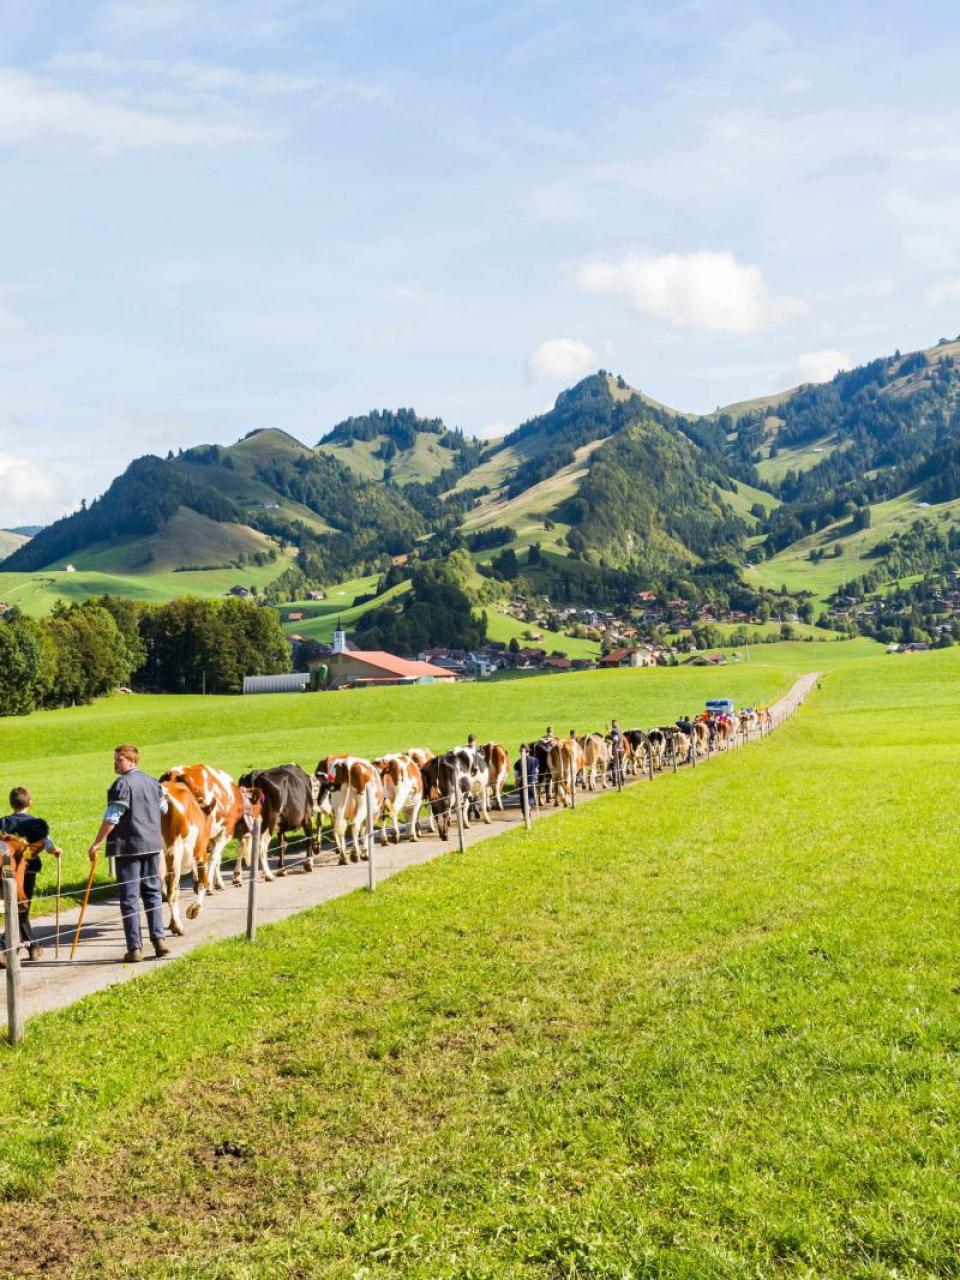 La mucca, un’icona svizzera 